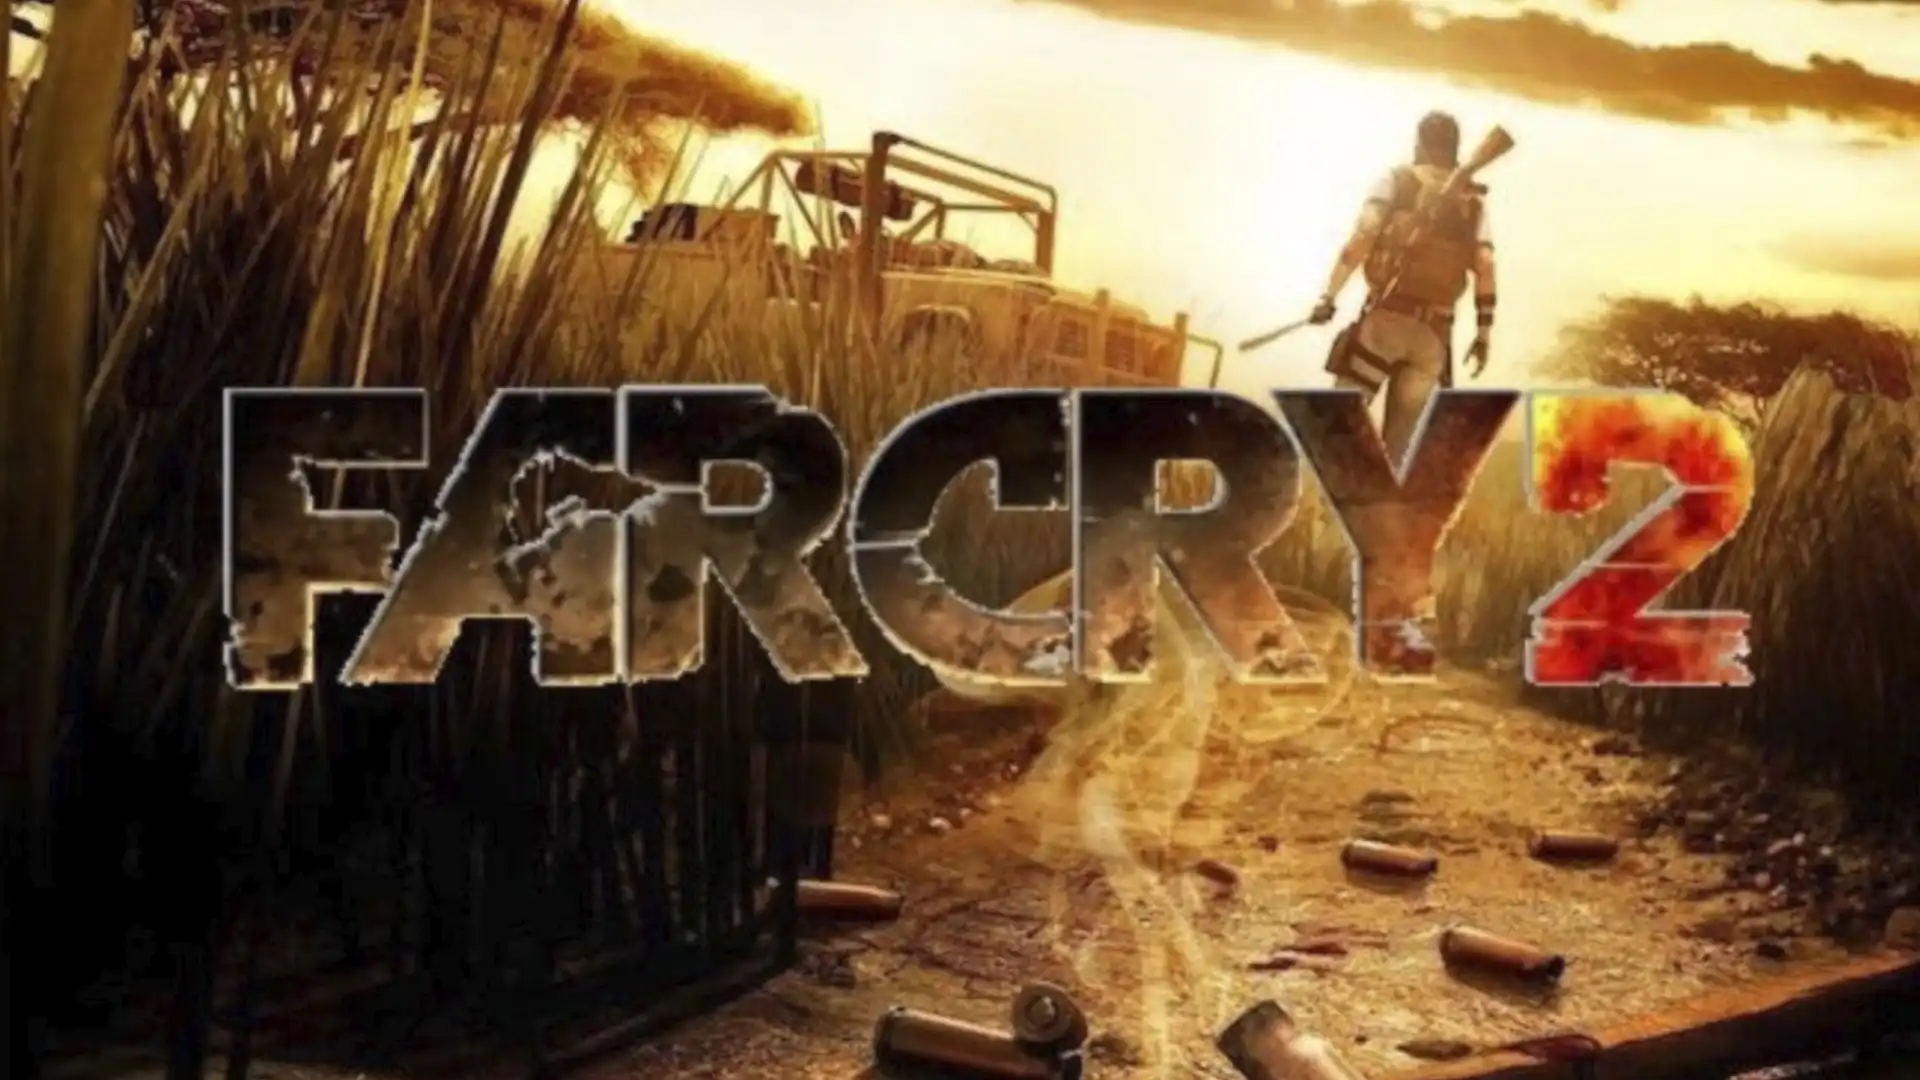 Обложка игры Far Cry 2 с видом на закат и силуэтом вооруженного человека.